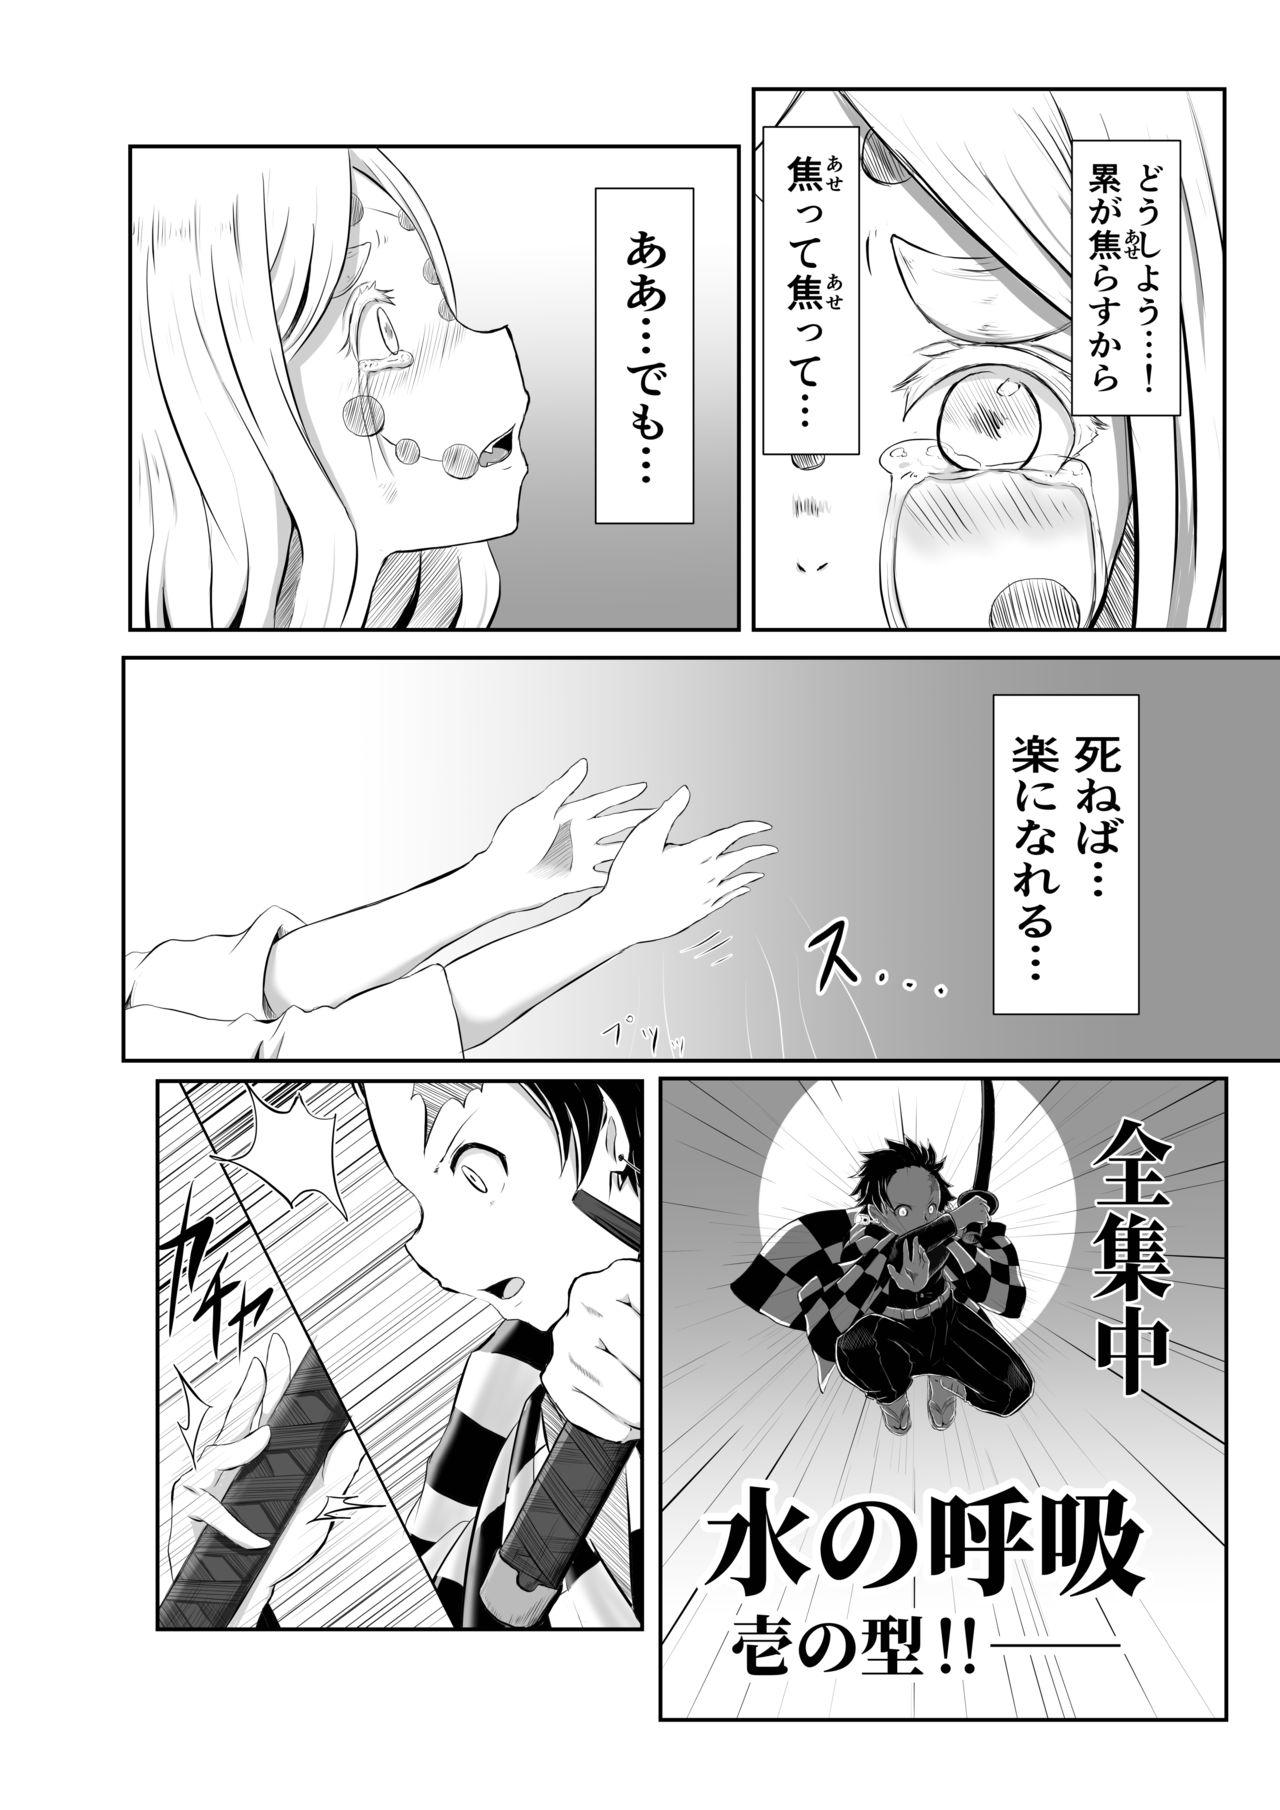 Grandma Hinokami Sex. - Kimetsu no yaiba | demon slayer Femdom Clips - Page 2